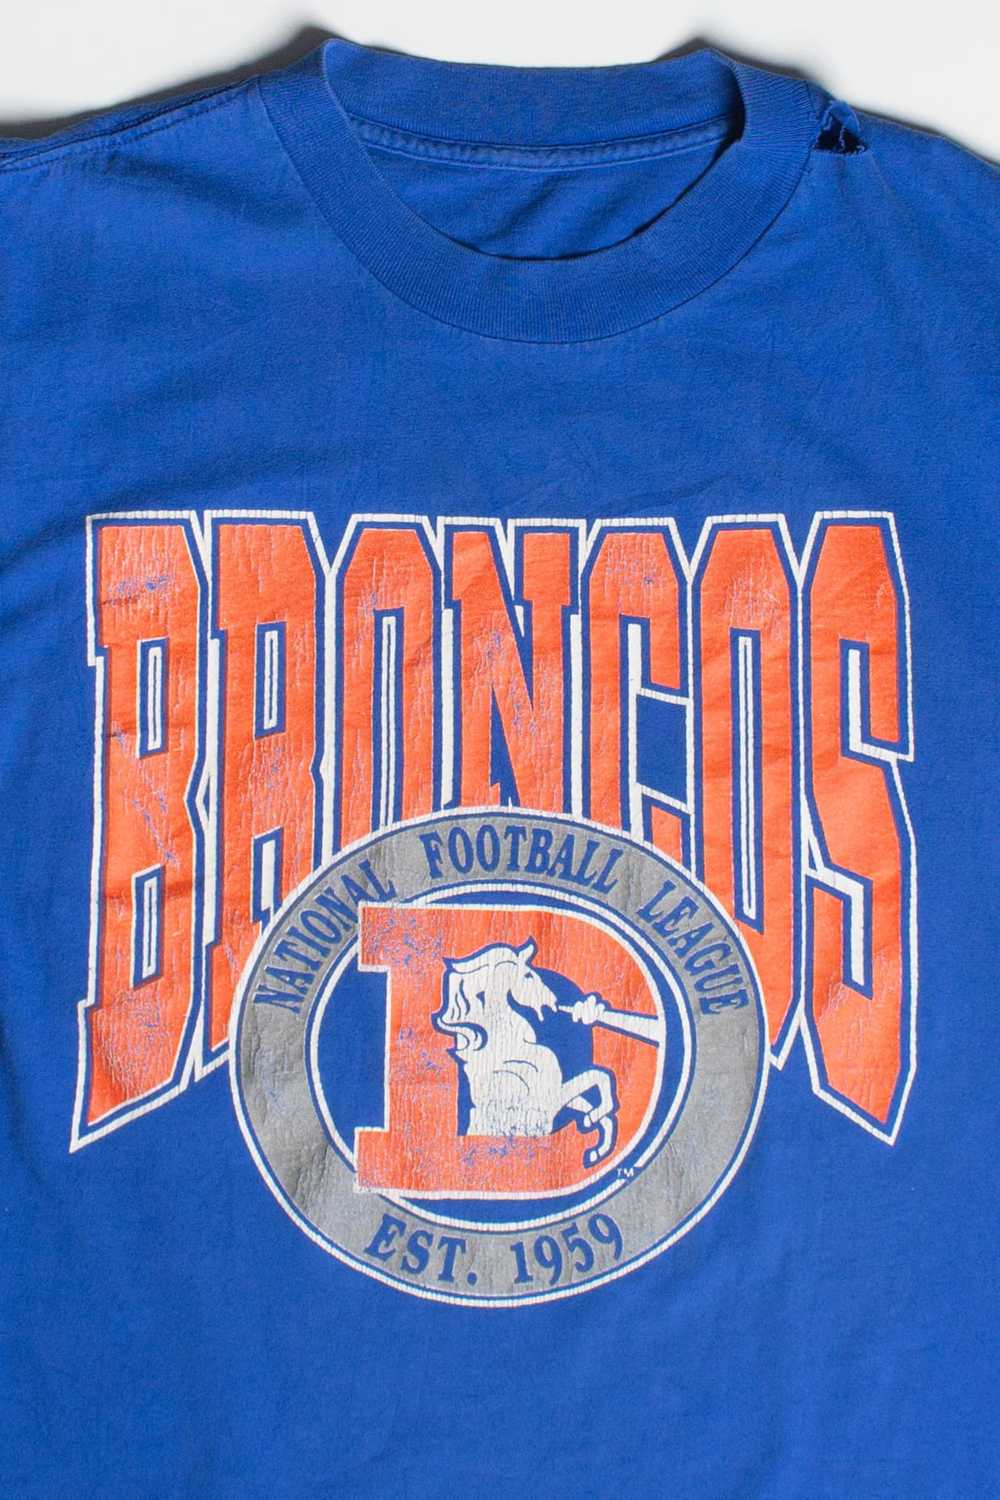 Vintage Denver Broncos T-Shirt (1990s) - image 2